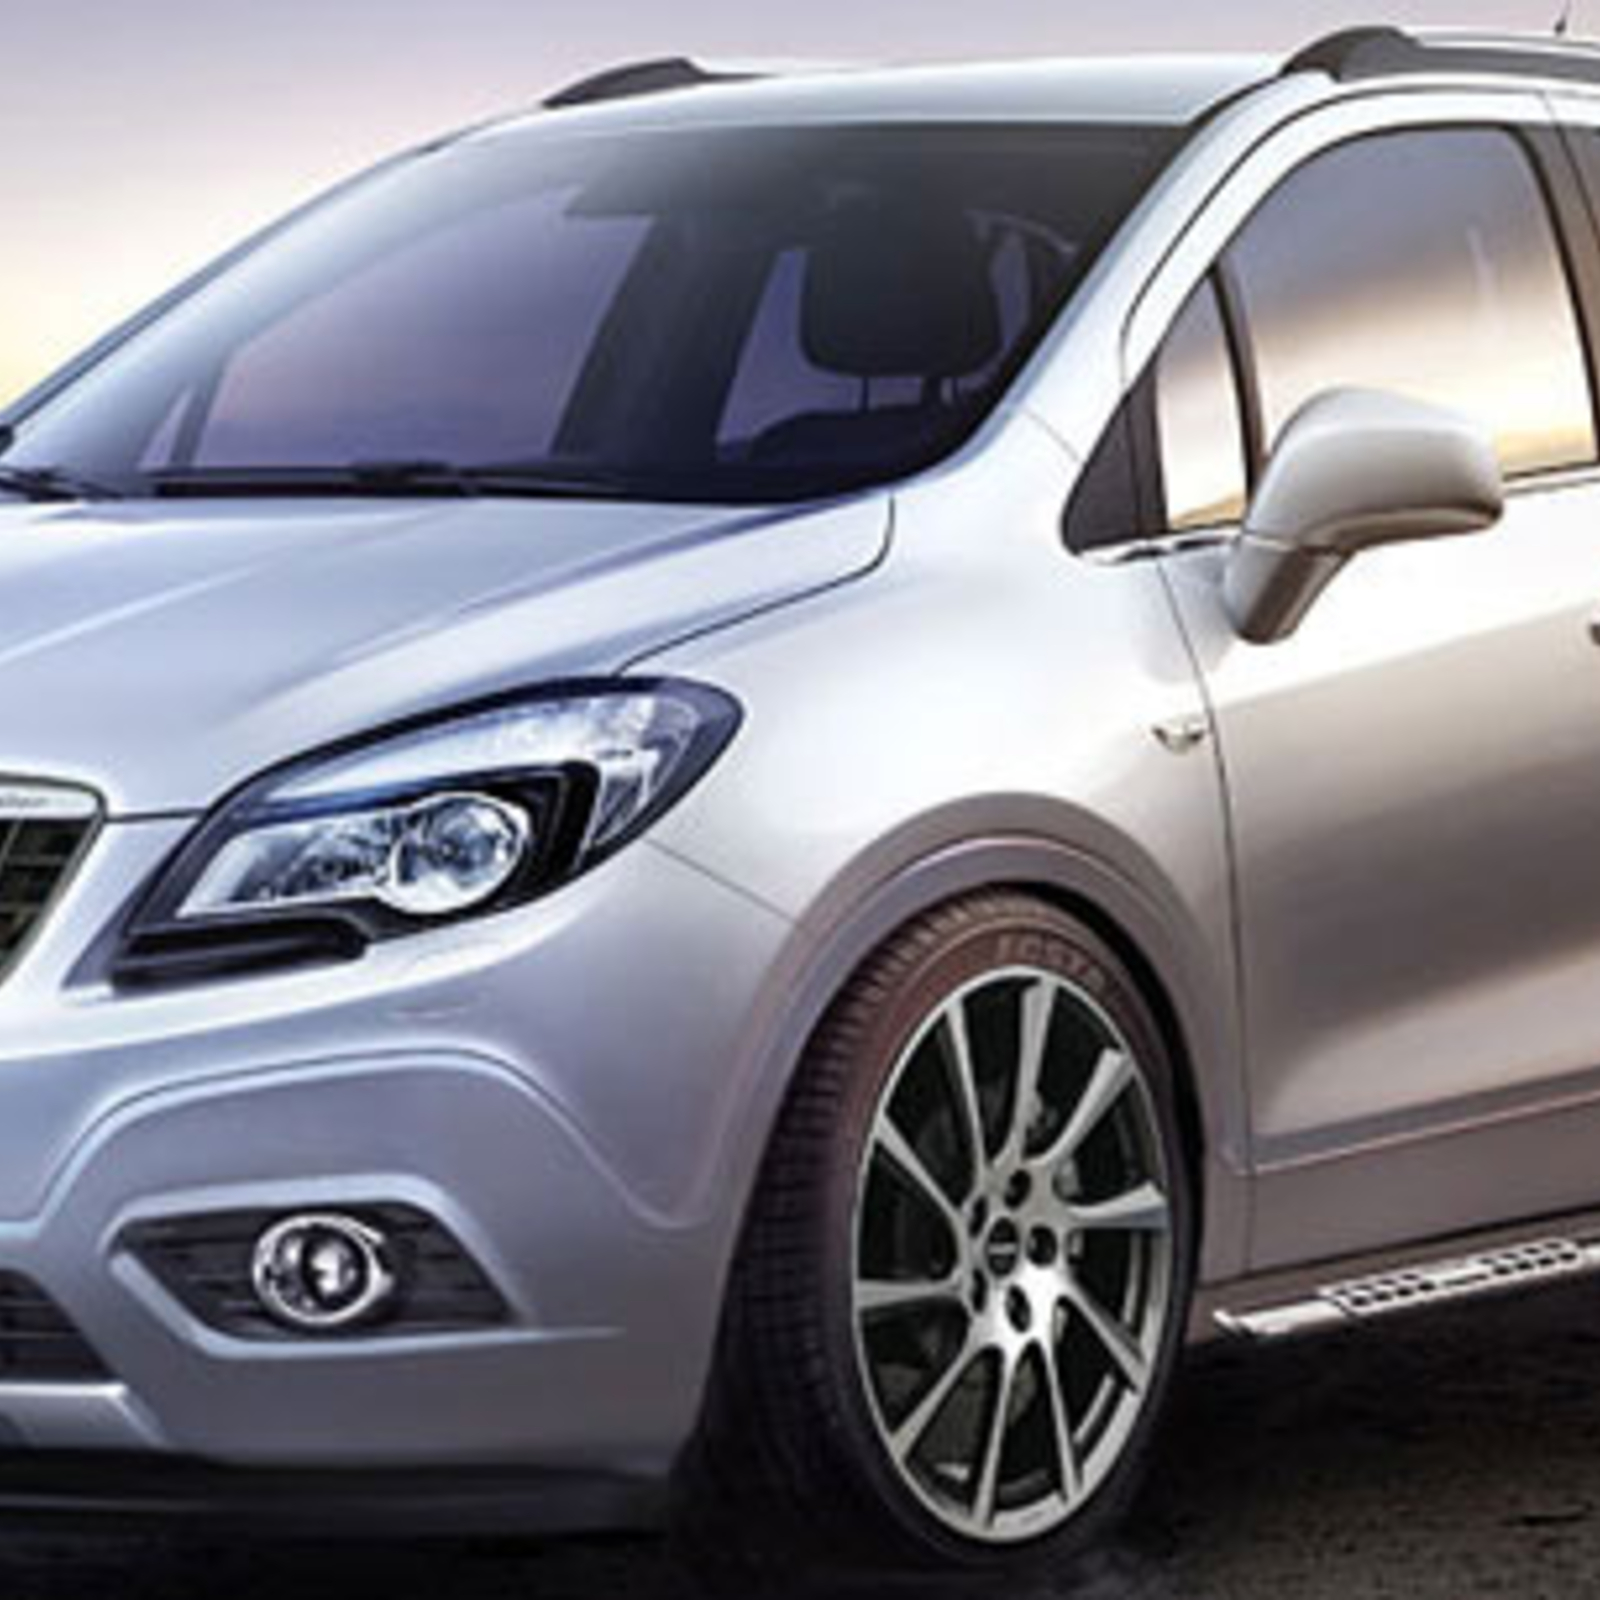 Irmscher motzt Opels neues SUV auf - oe24.at